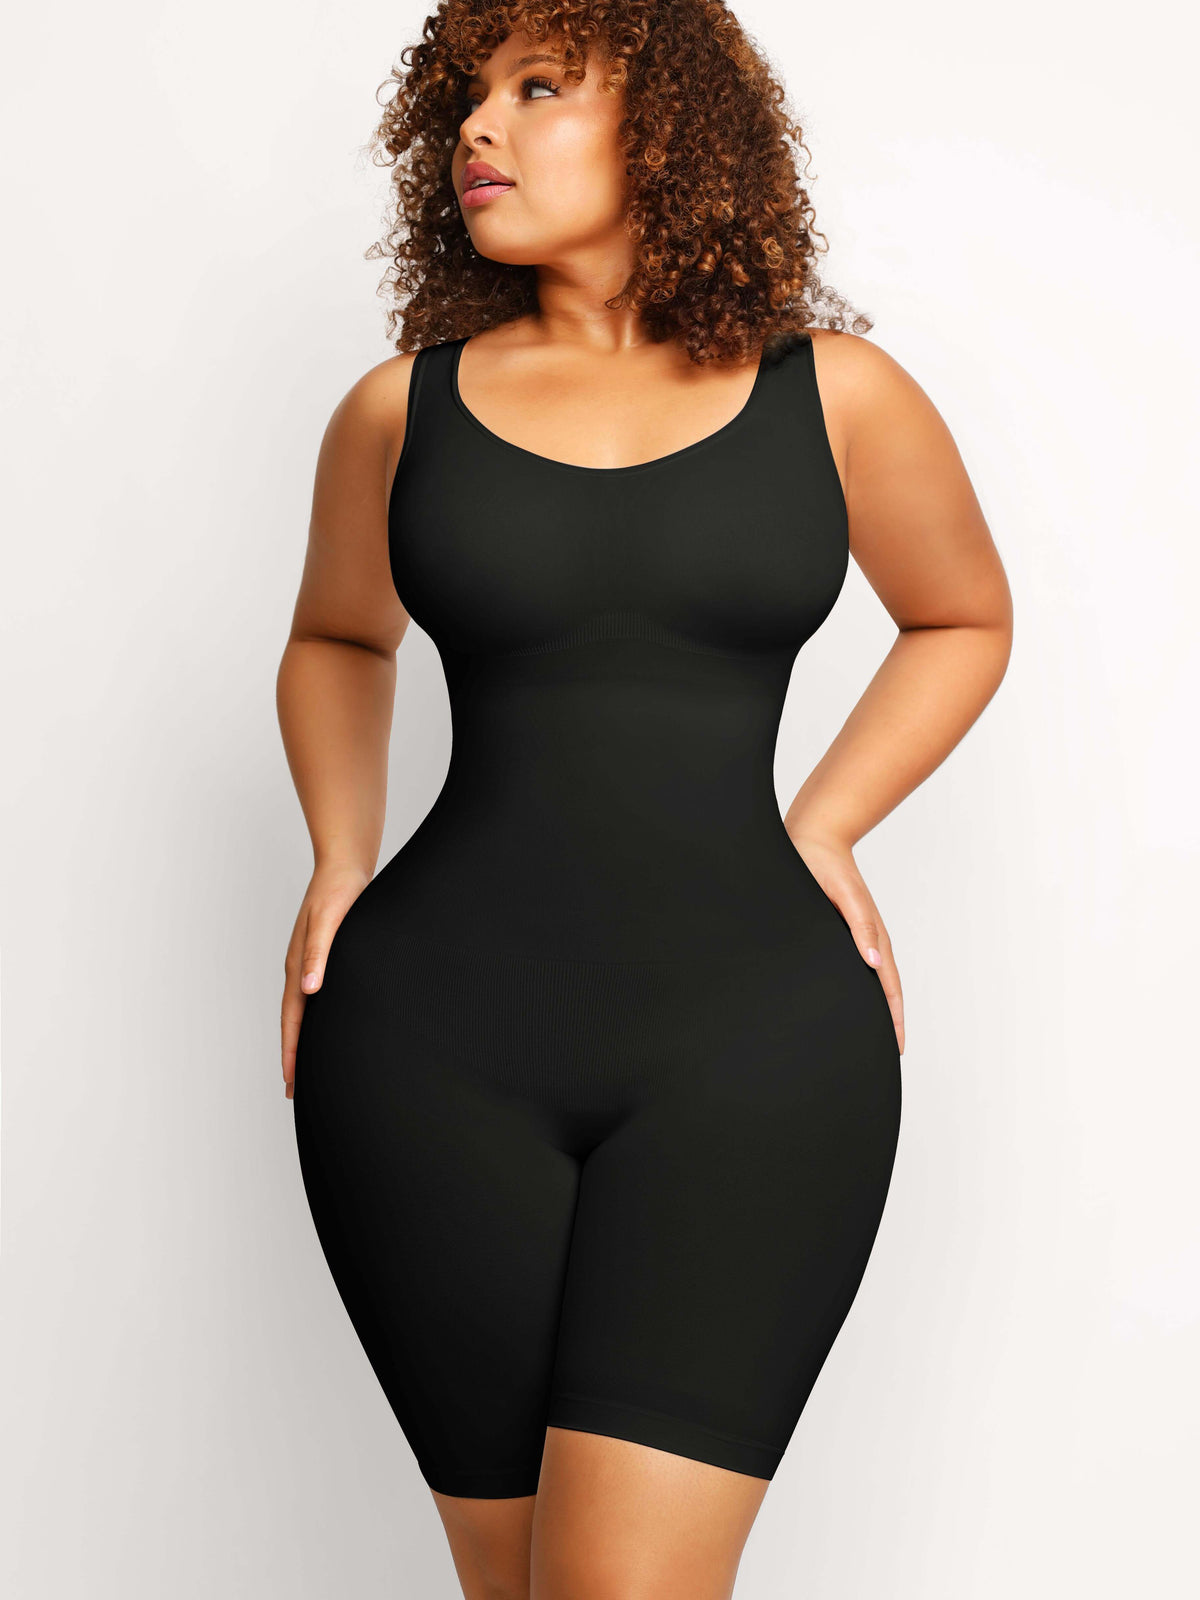 SHAPERX Tummy Control Shapewear for Women Seamless Fajas Bodysuit Open Bust  Mid